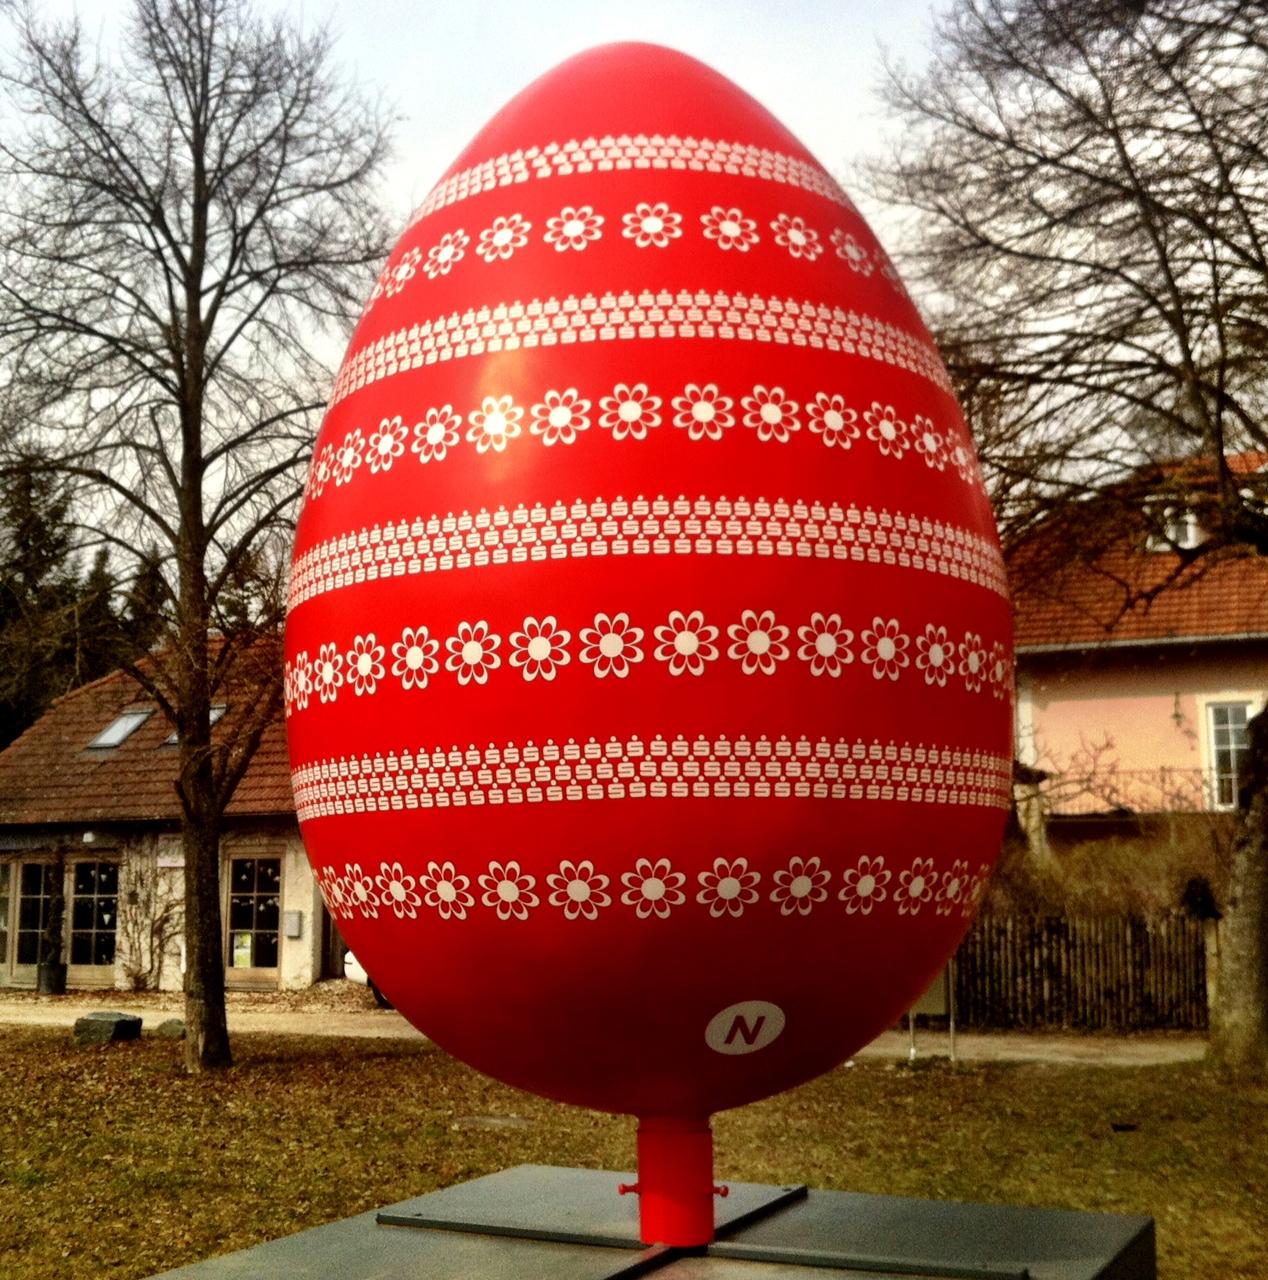 Giant red Easter Egg in Burghausen, Germany.